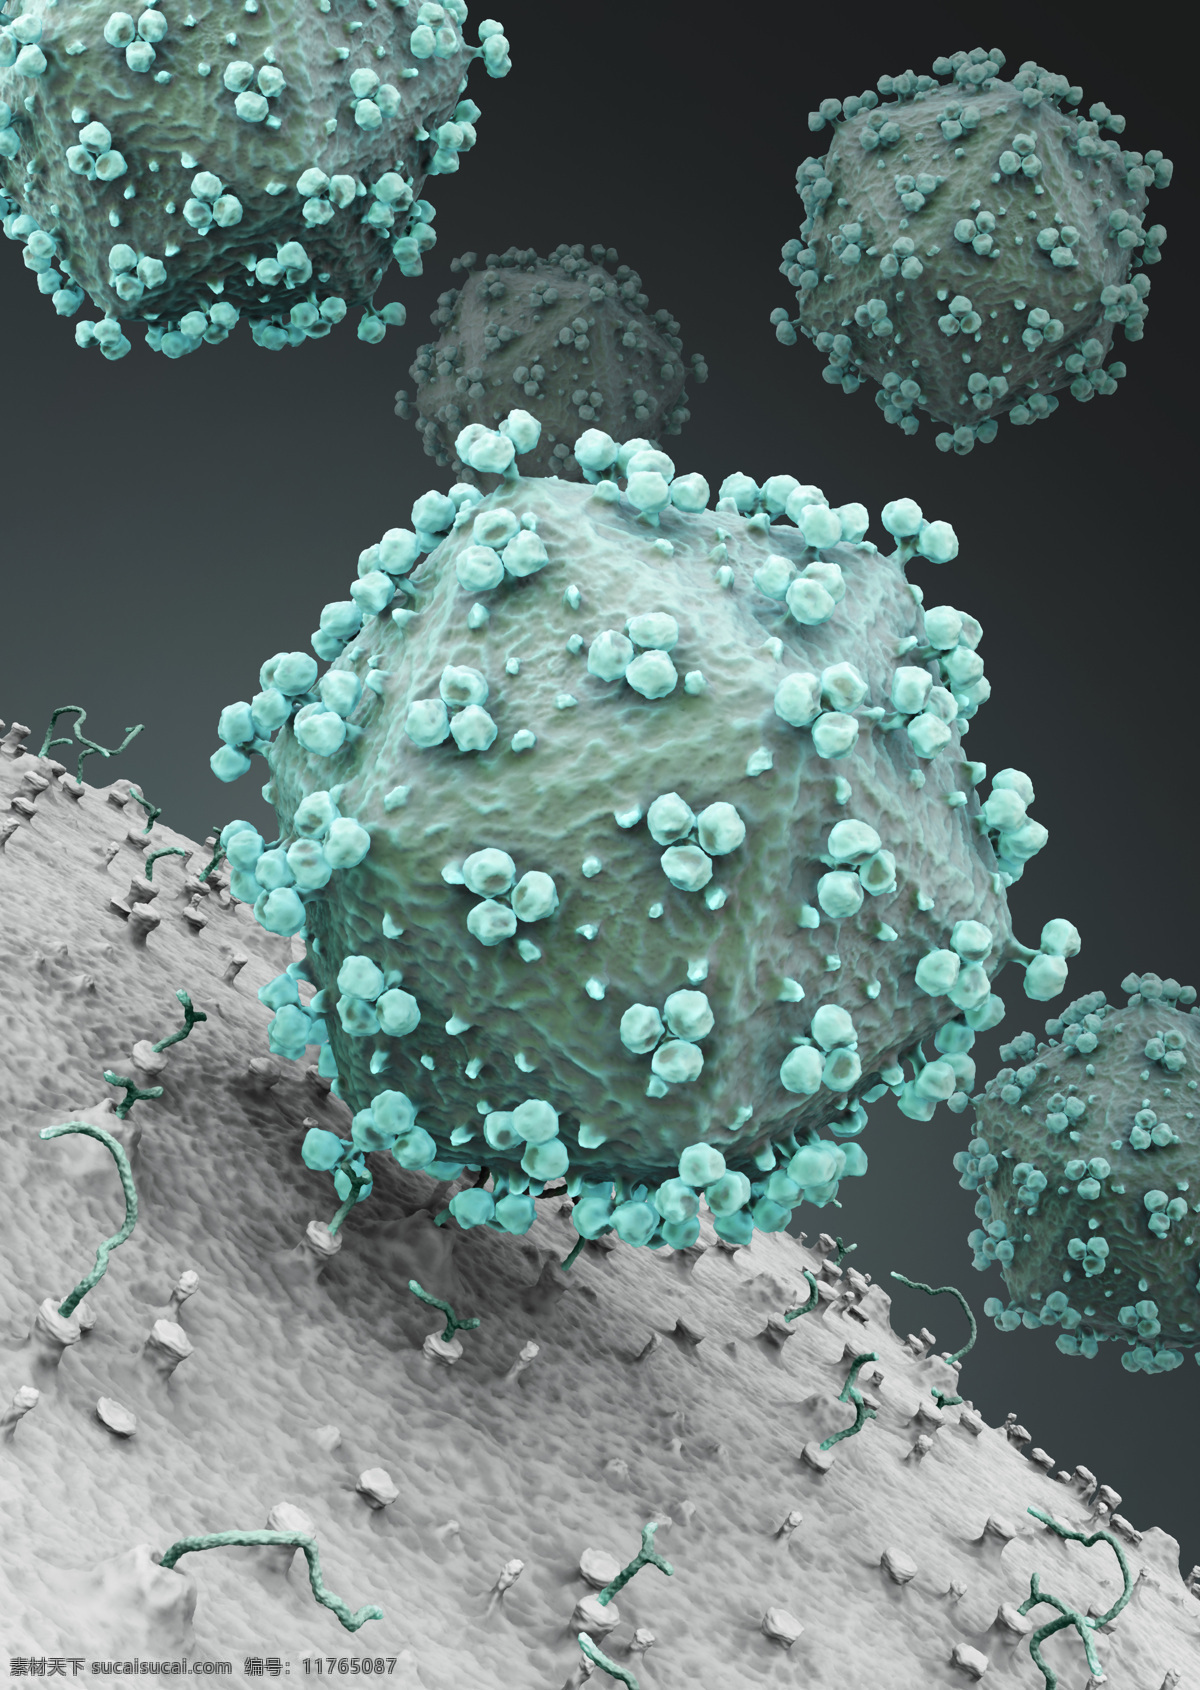 病毒细胞 生物细胞 细菌 病毒 生物研究 科学研究 其他类别 生活百科 灰色